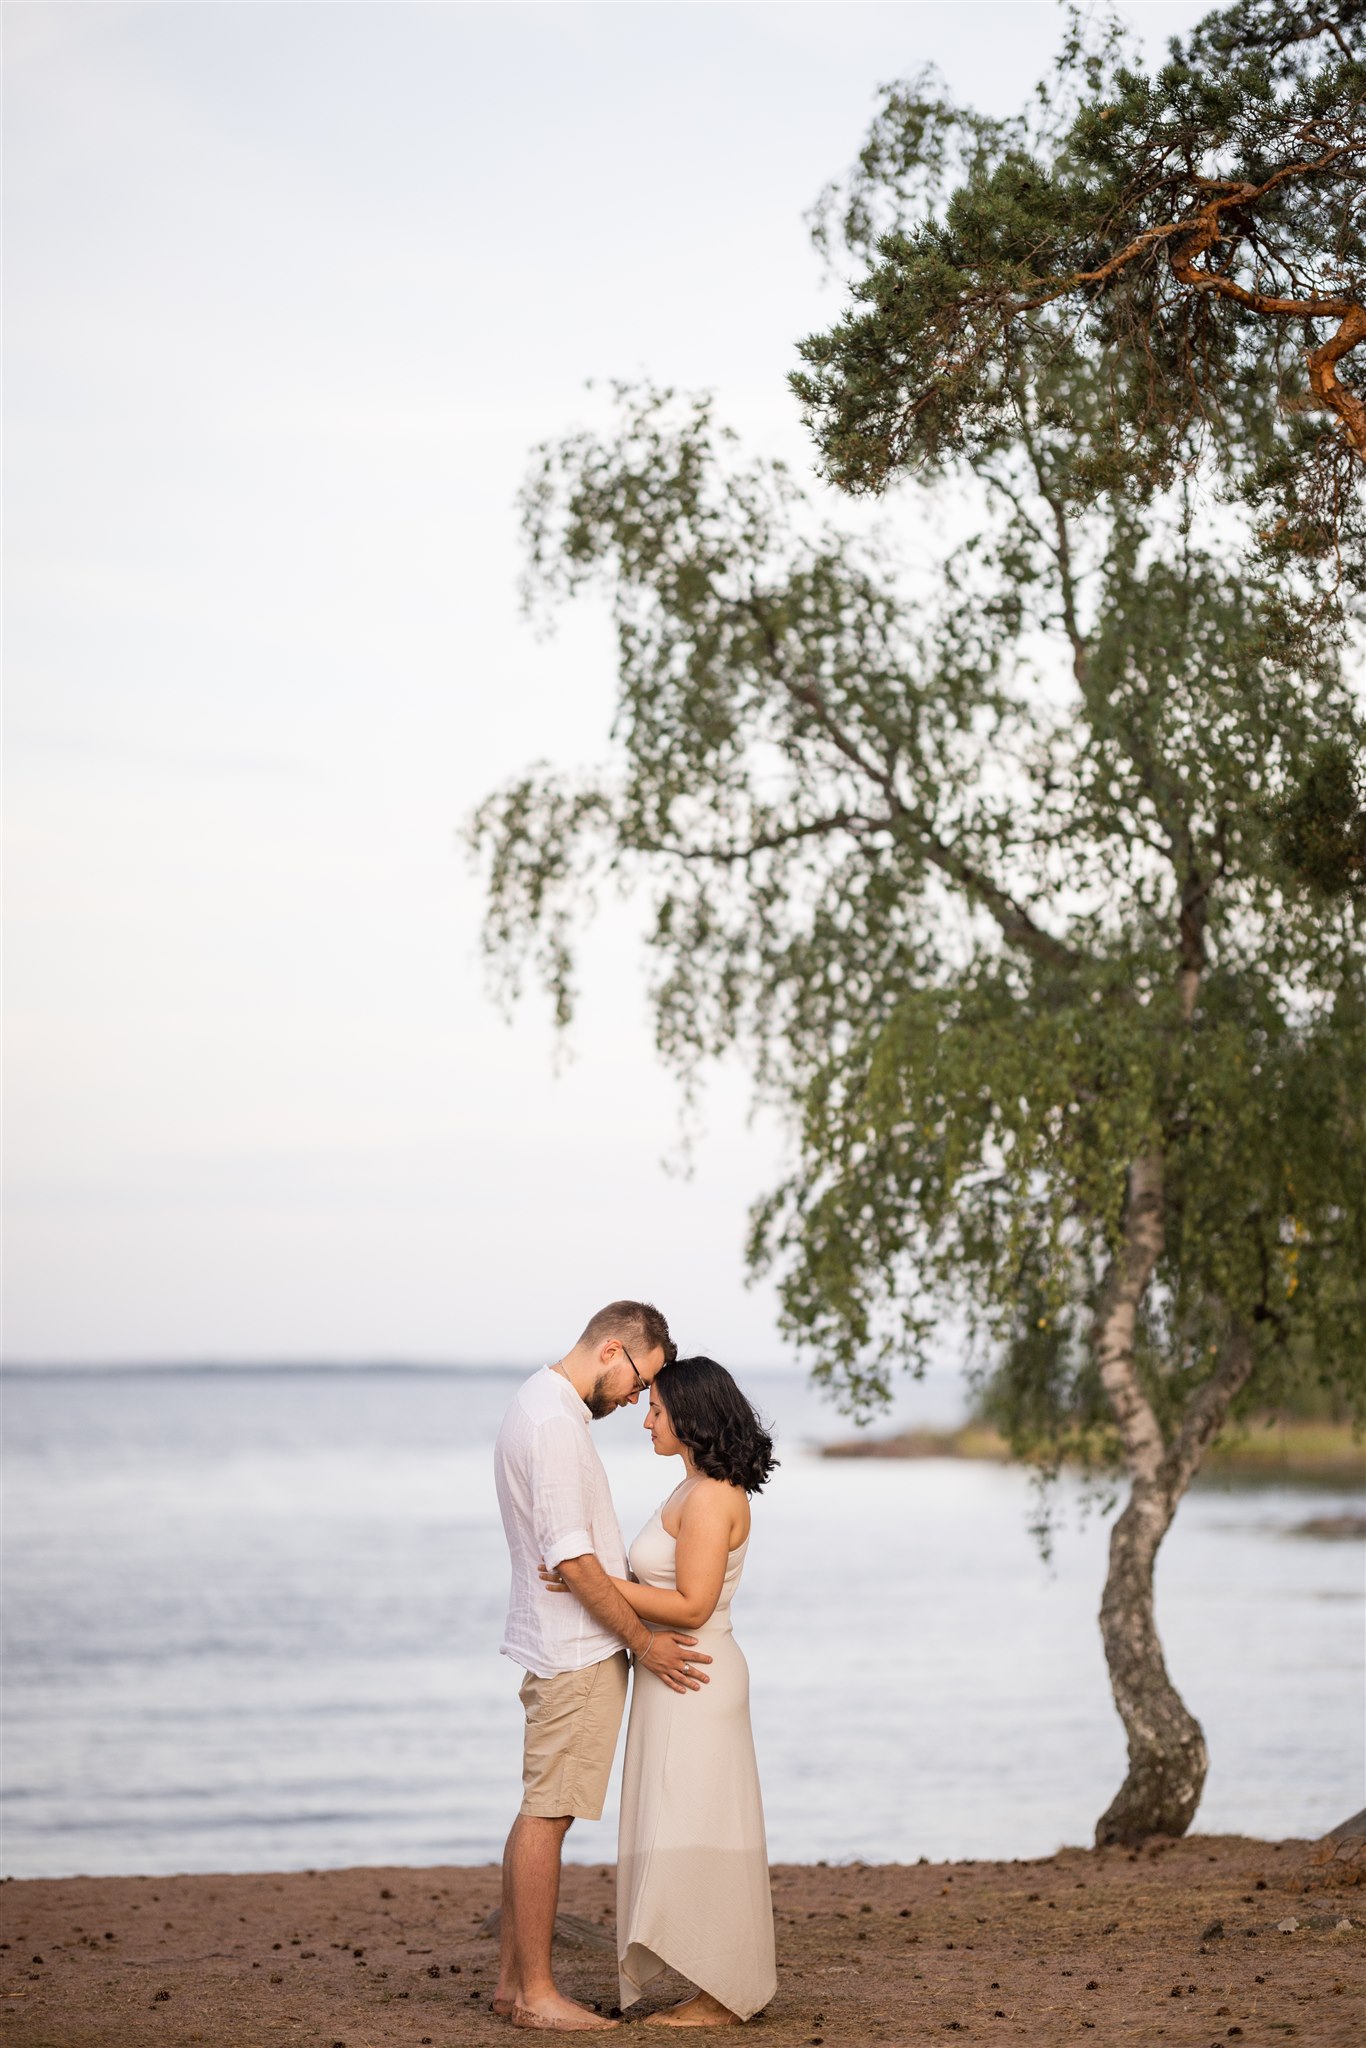 En förlovningsfotografering under Golden Hour. Bröllopsfotograf är Fotograf Tove Lundquist, platsen är vackra Vånevik i Oskarshamn.